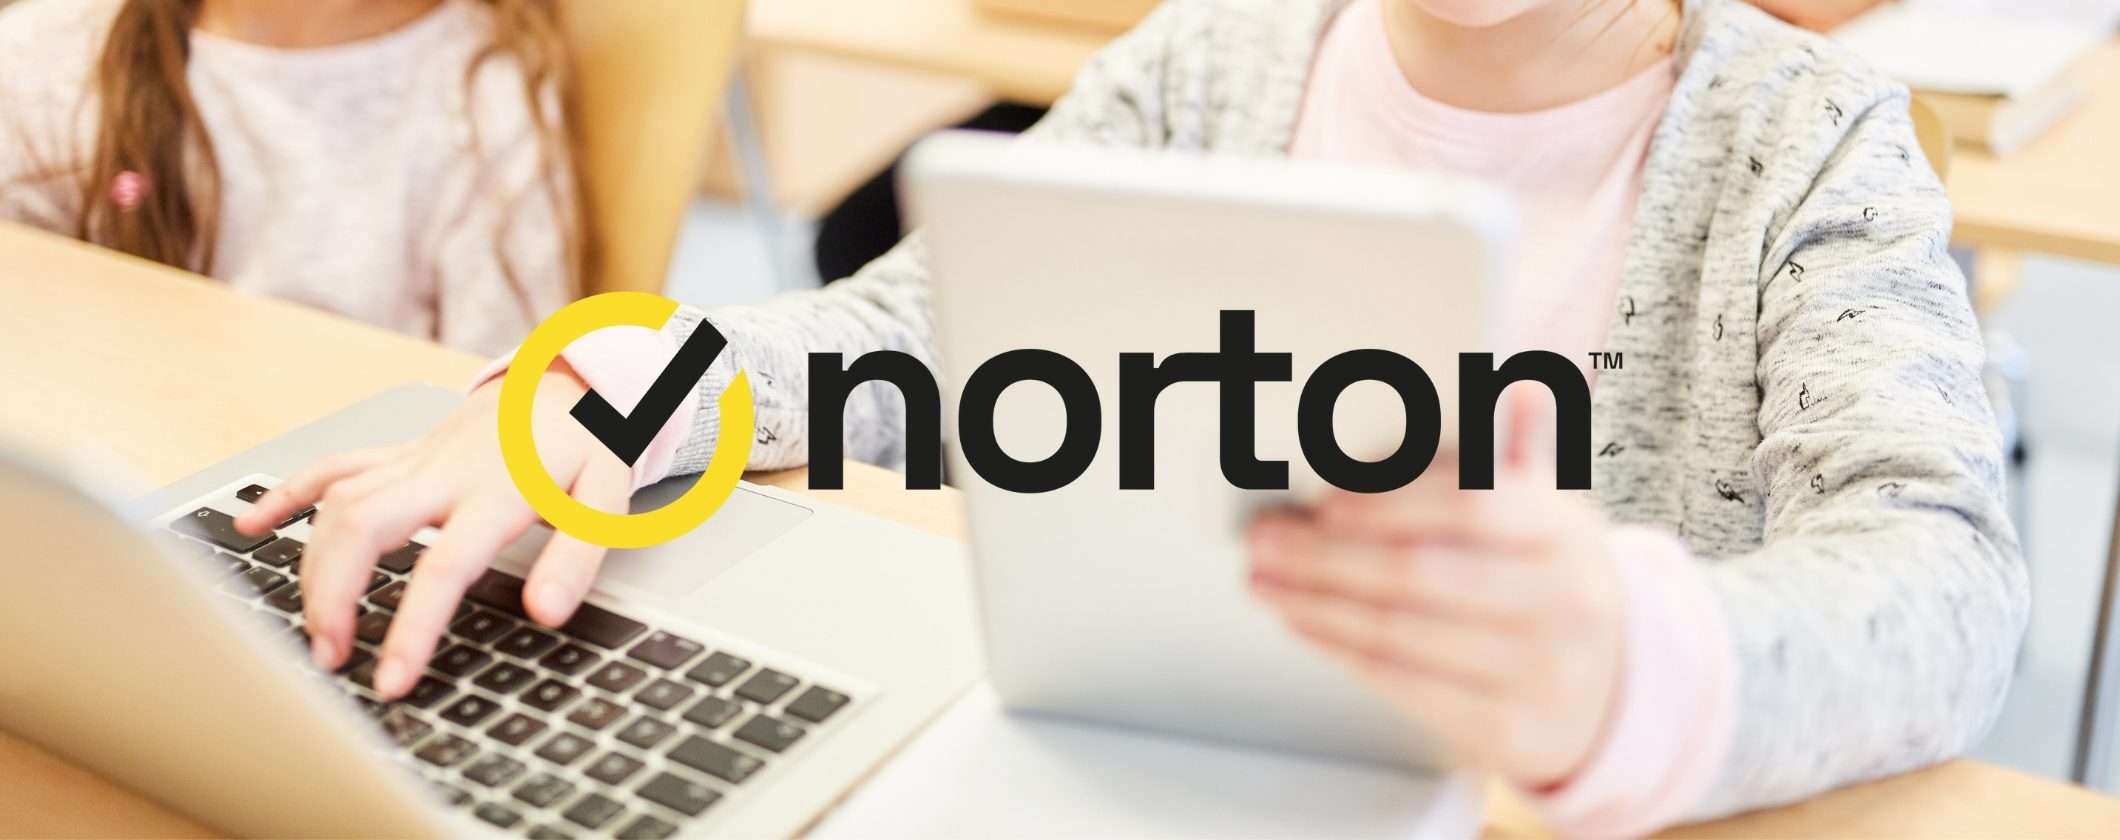 Norton diventa Family: scopri le funzionalità pensate per la famiglia